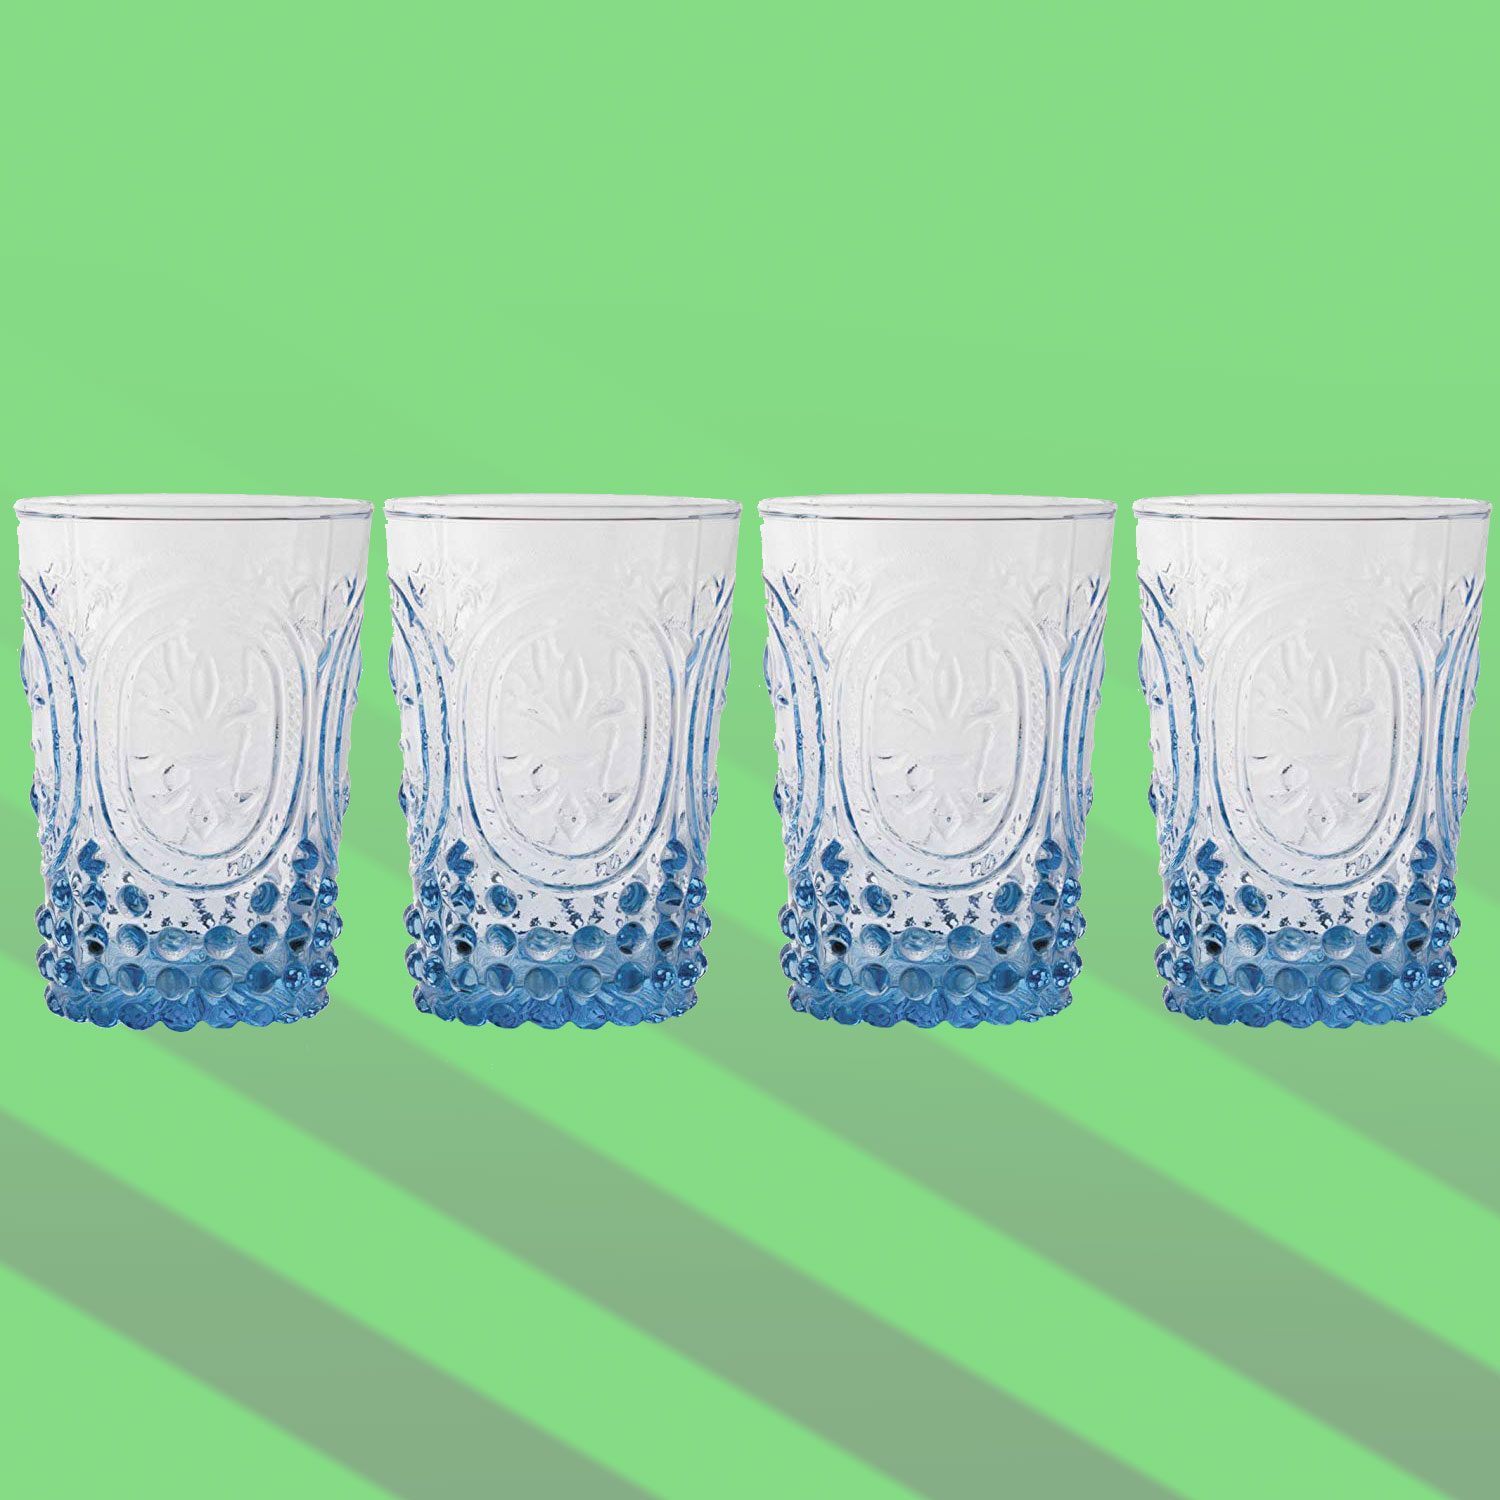 https://www.tasteofhome.com/wp-content/uploads/2018/08/European-Inspired-Juice-Glasses.jpg?fit=700%2C700